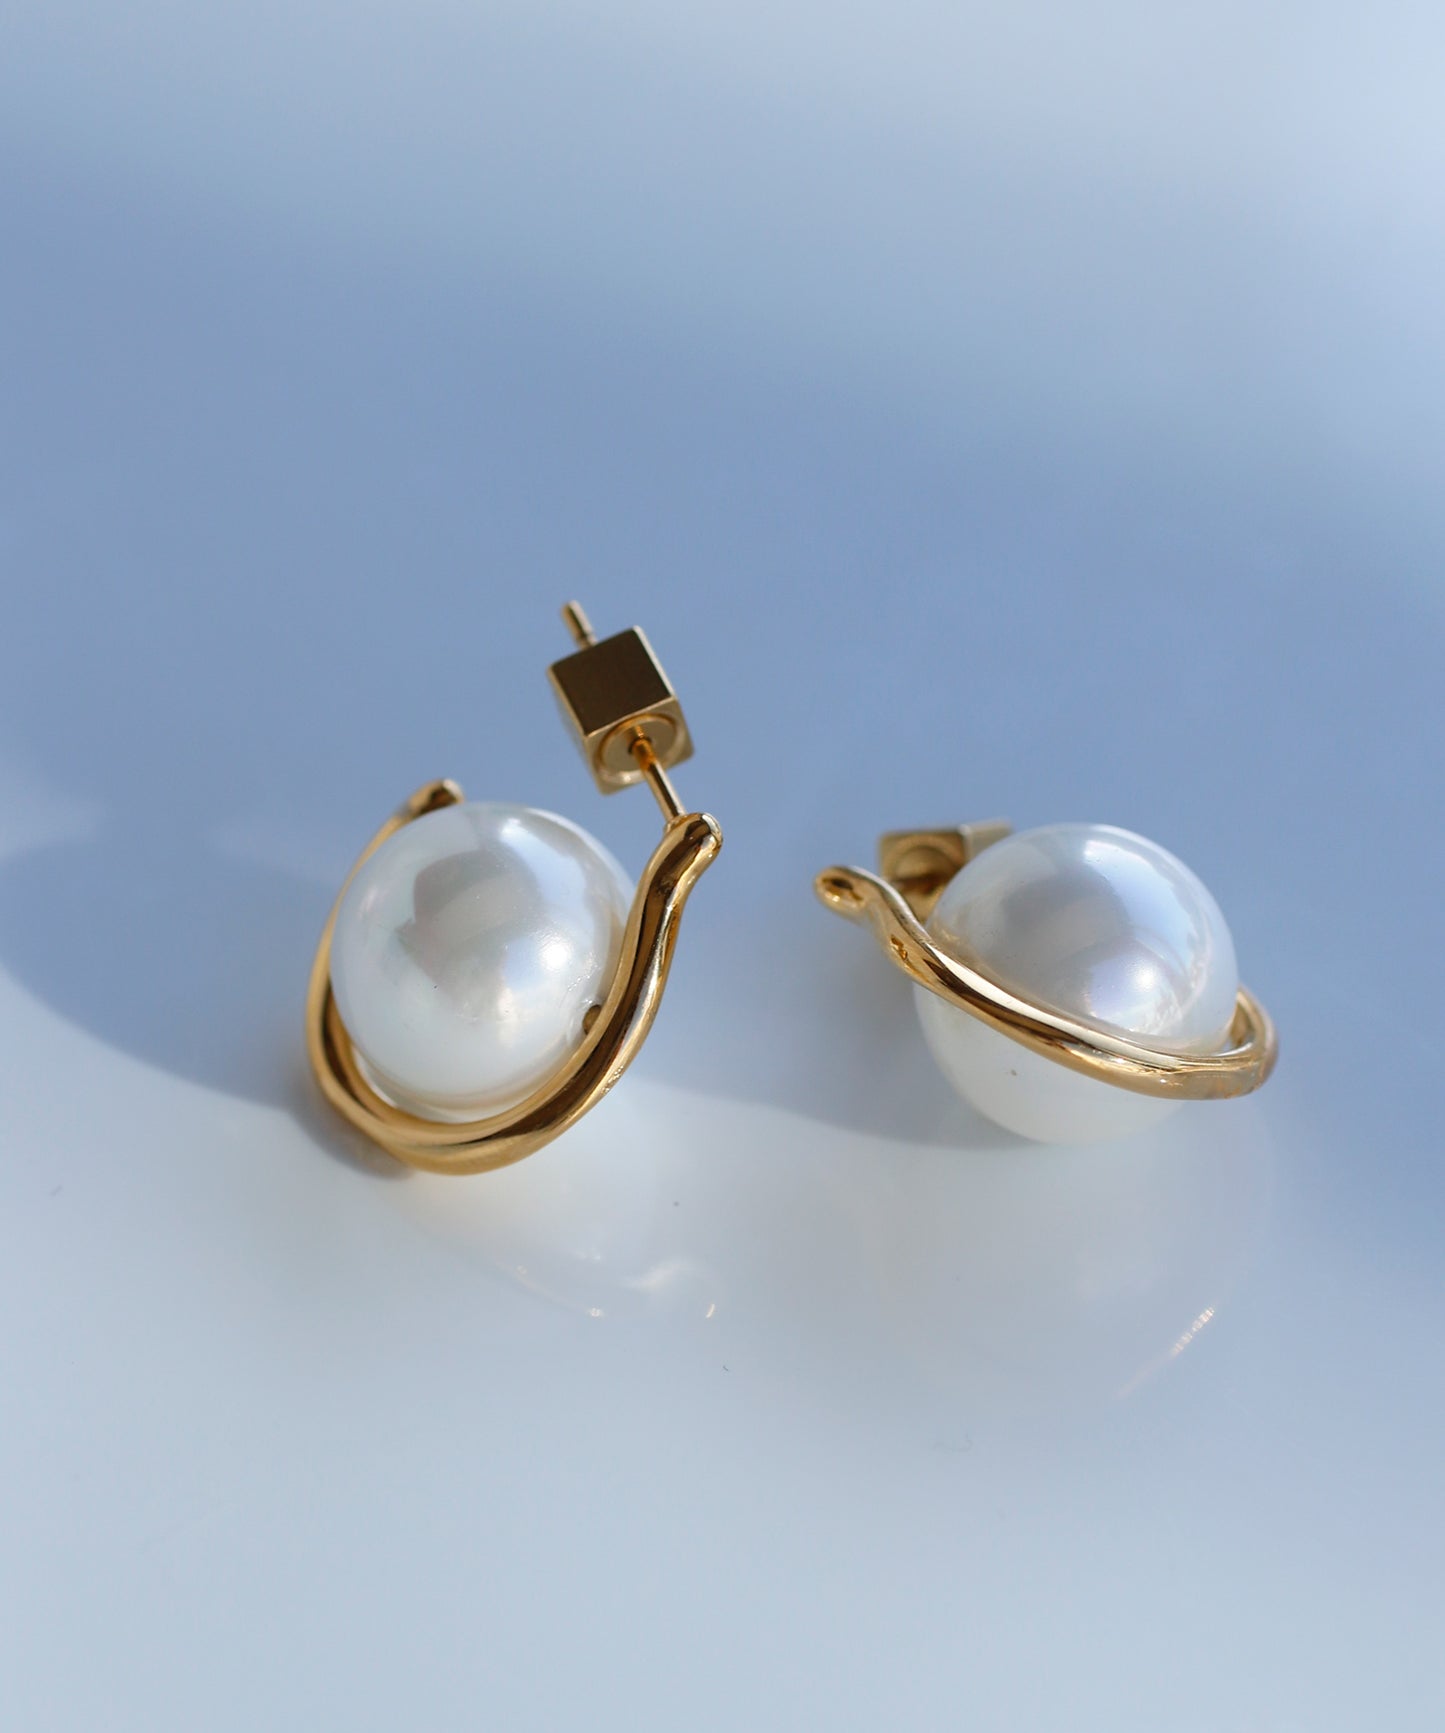 【Stainless Seel IP】 Pearl Earrings